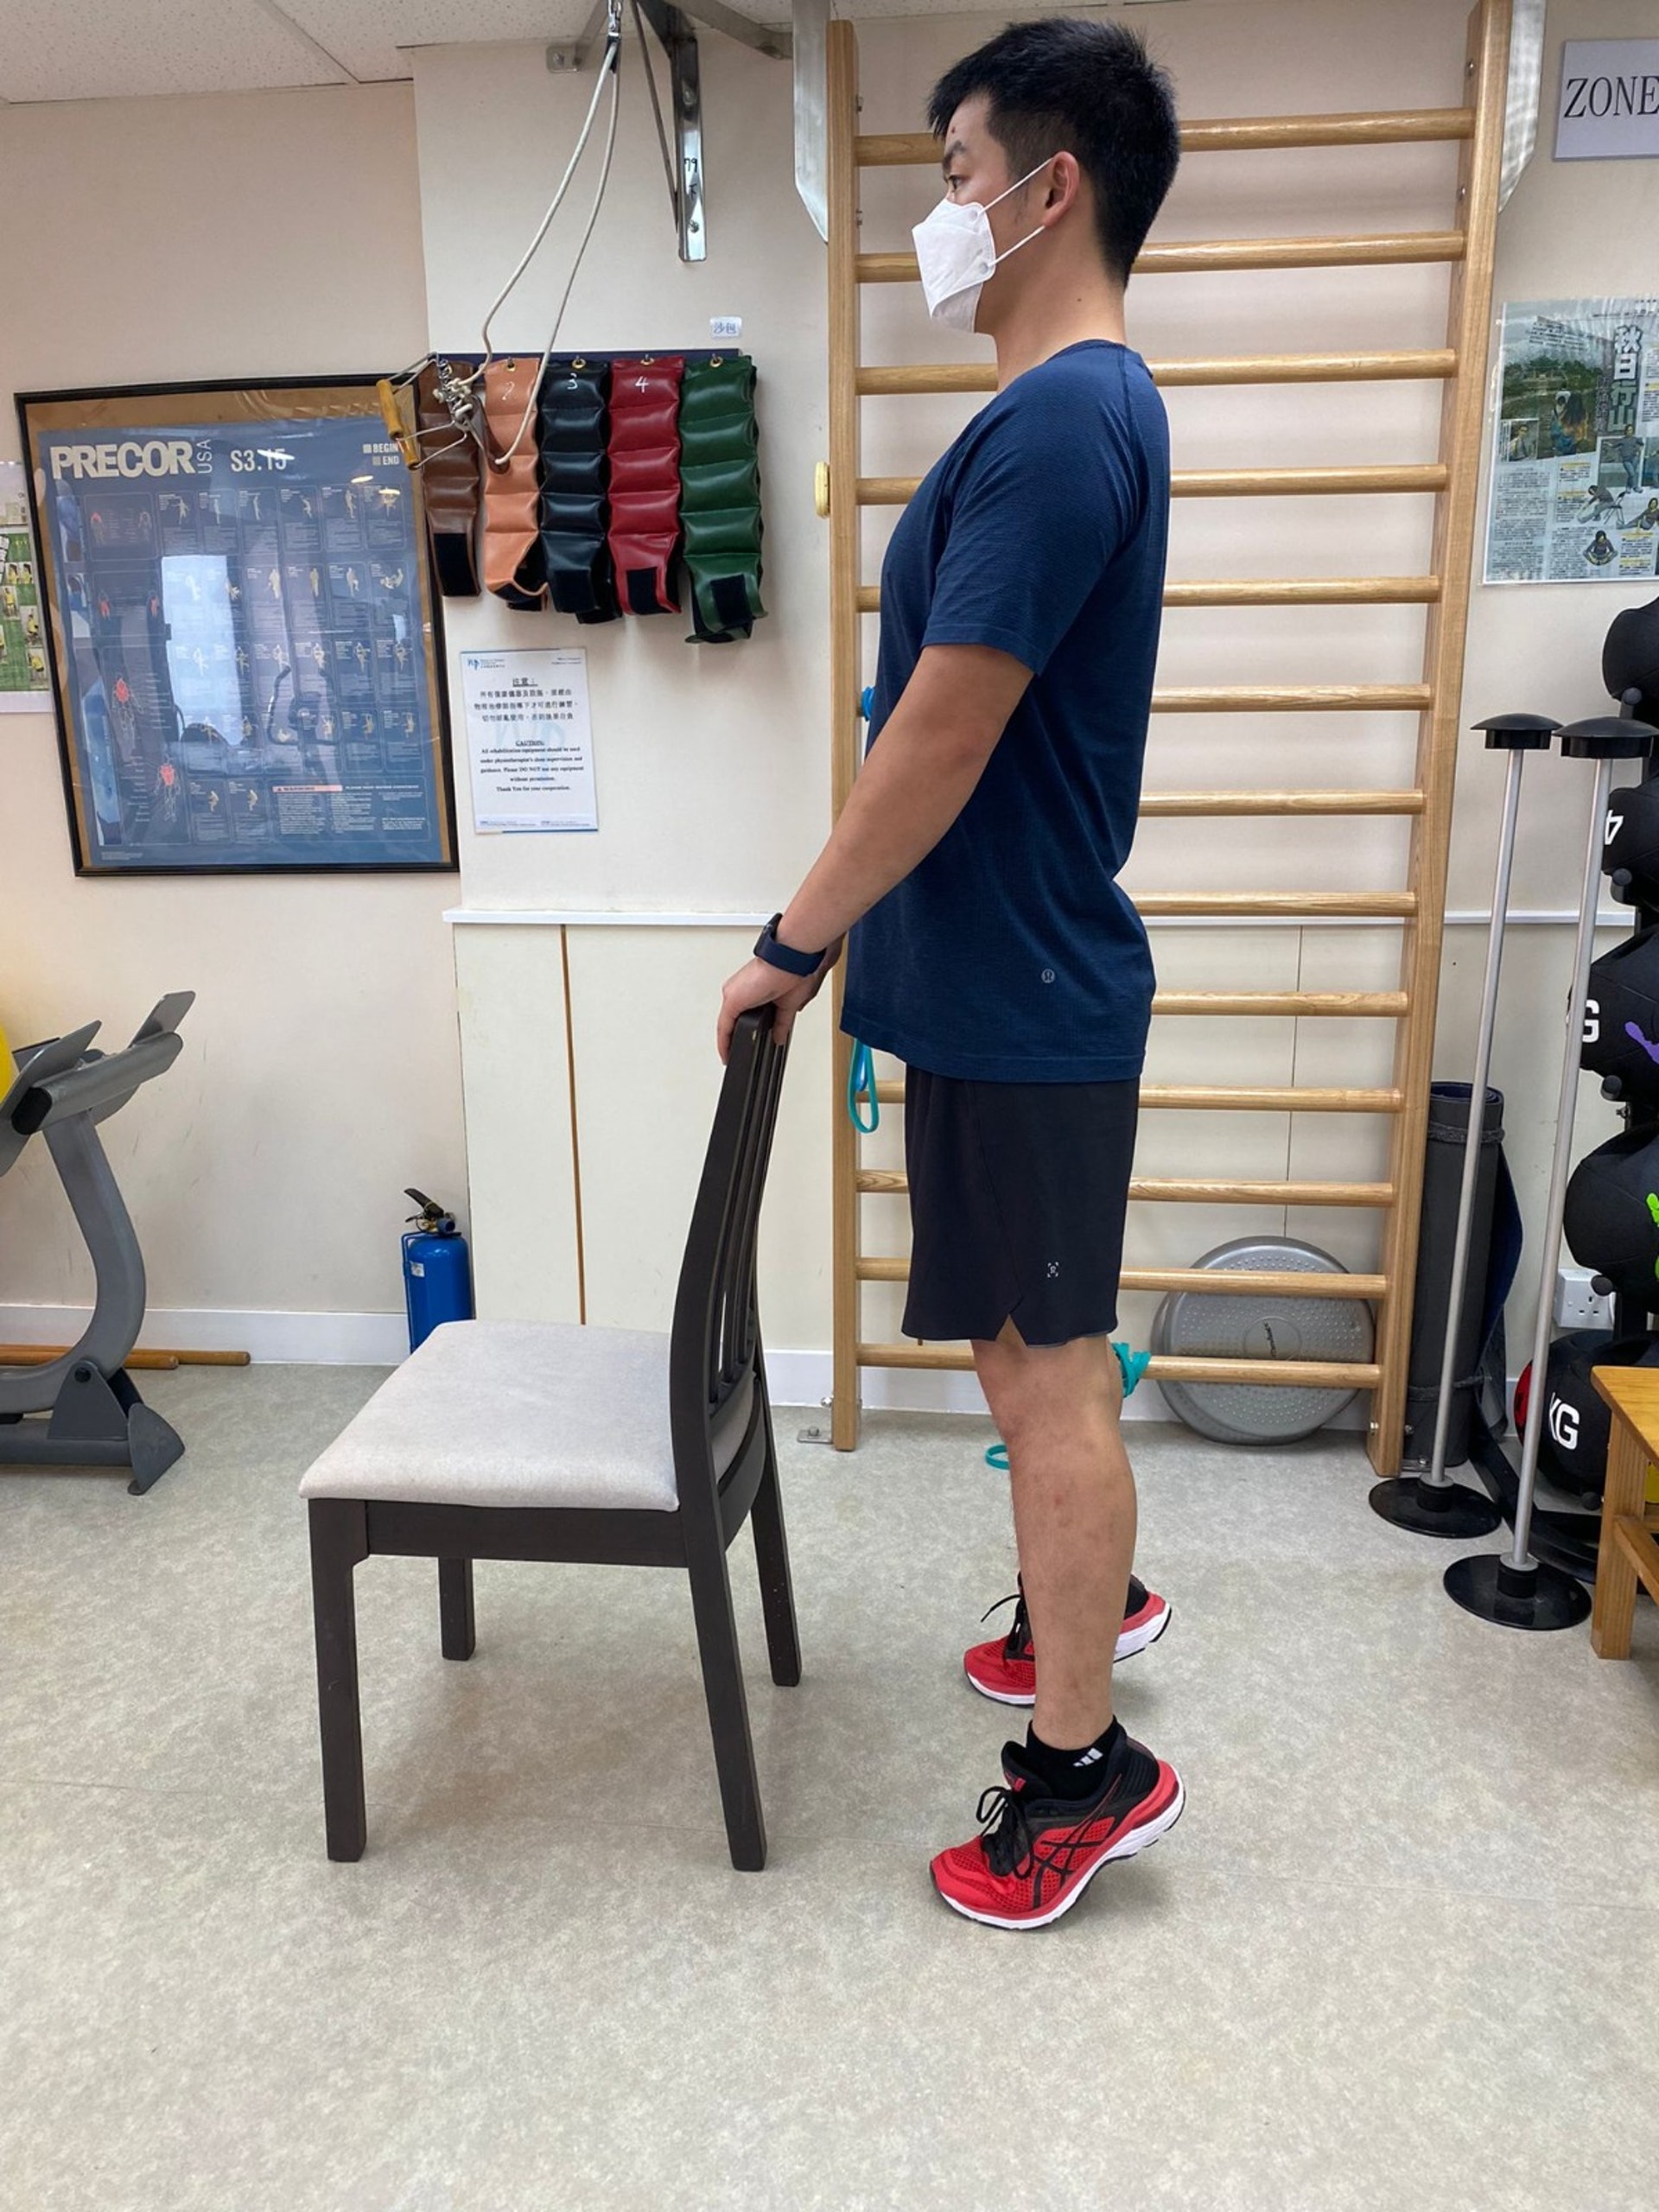 預防骨質疏鬆症的簡單動作: 
踮腳尖-雙手扶着椅背，腳跟到頭部維持一直線，踮起腳尖站立，再放下腳跟到地面，可強化小腿肌肉。